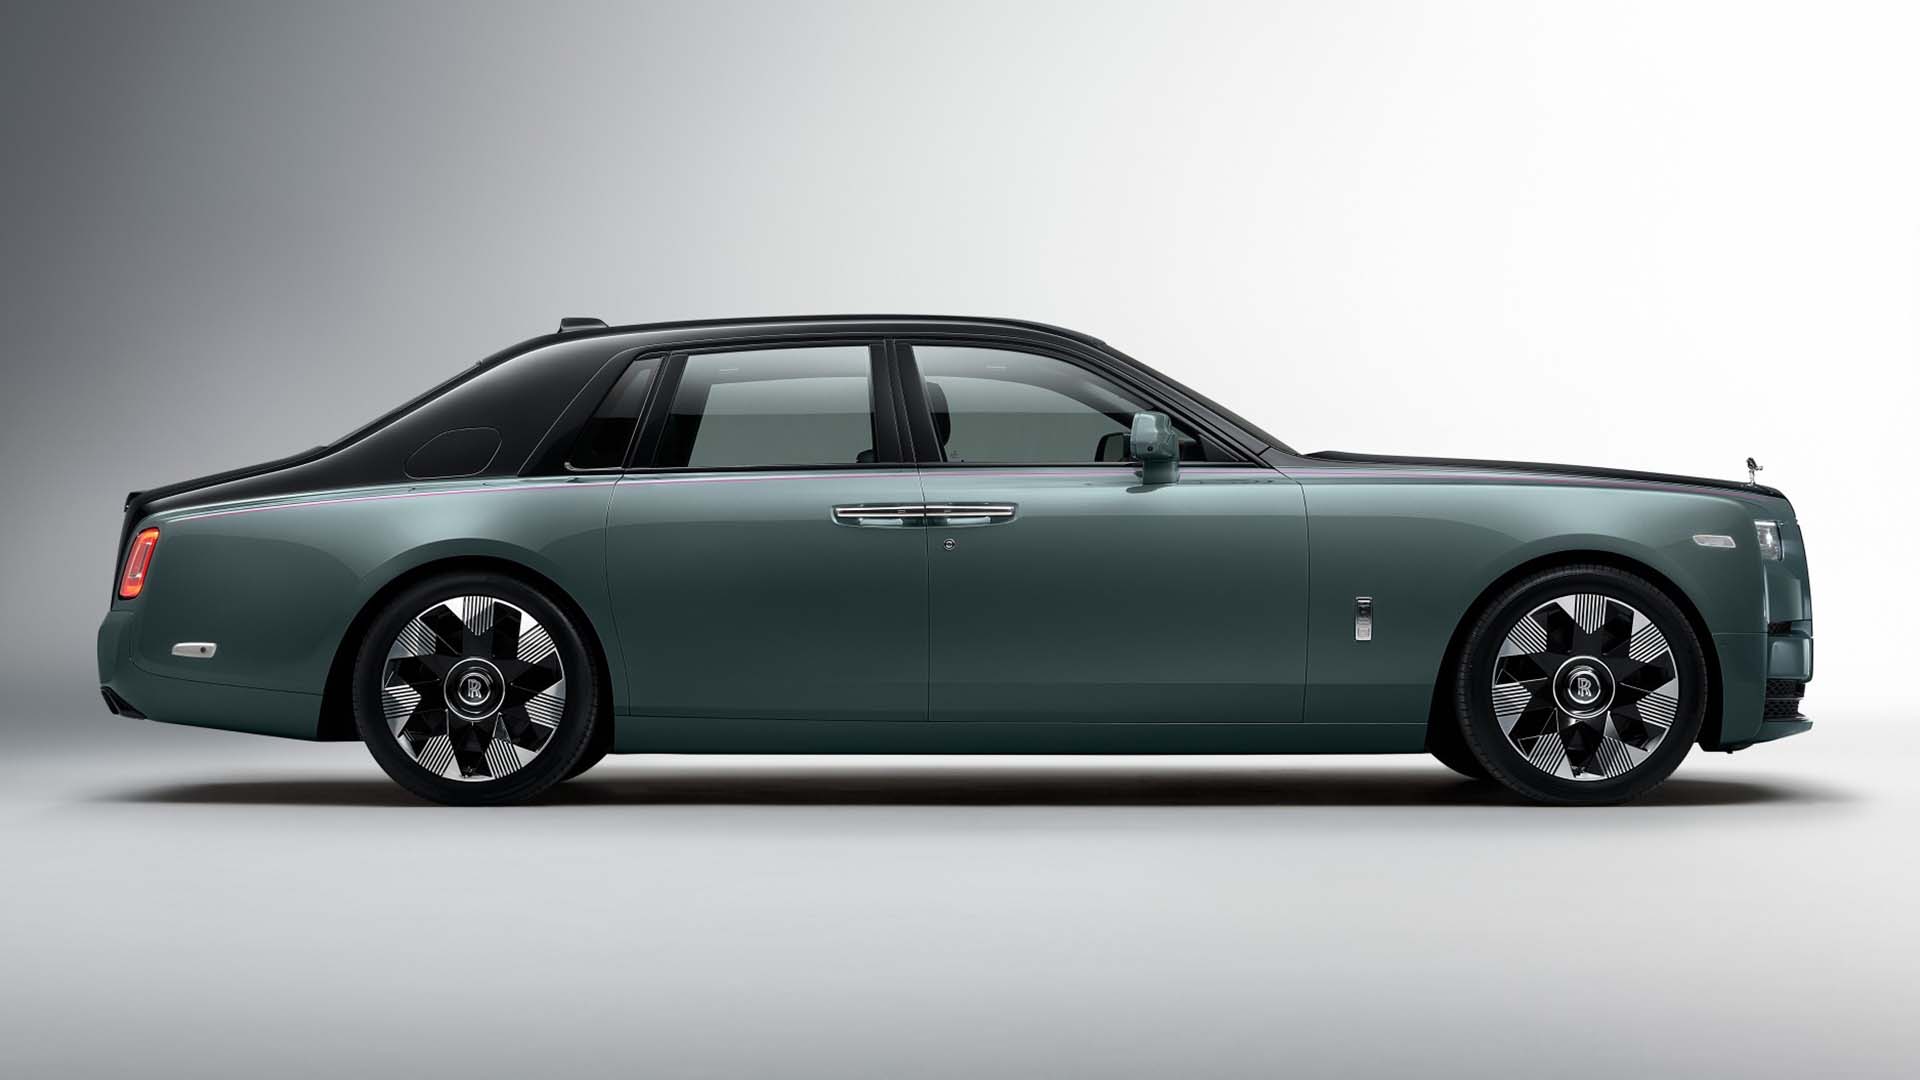 Maker Of Stunning CustomMade Rolls Royce Phantom Hopes To Sell It For 52  Million